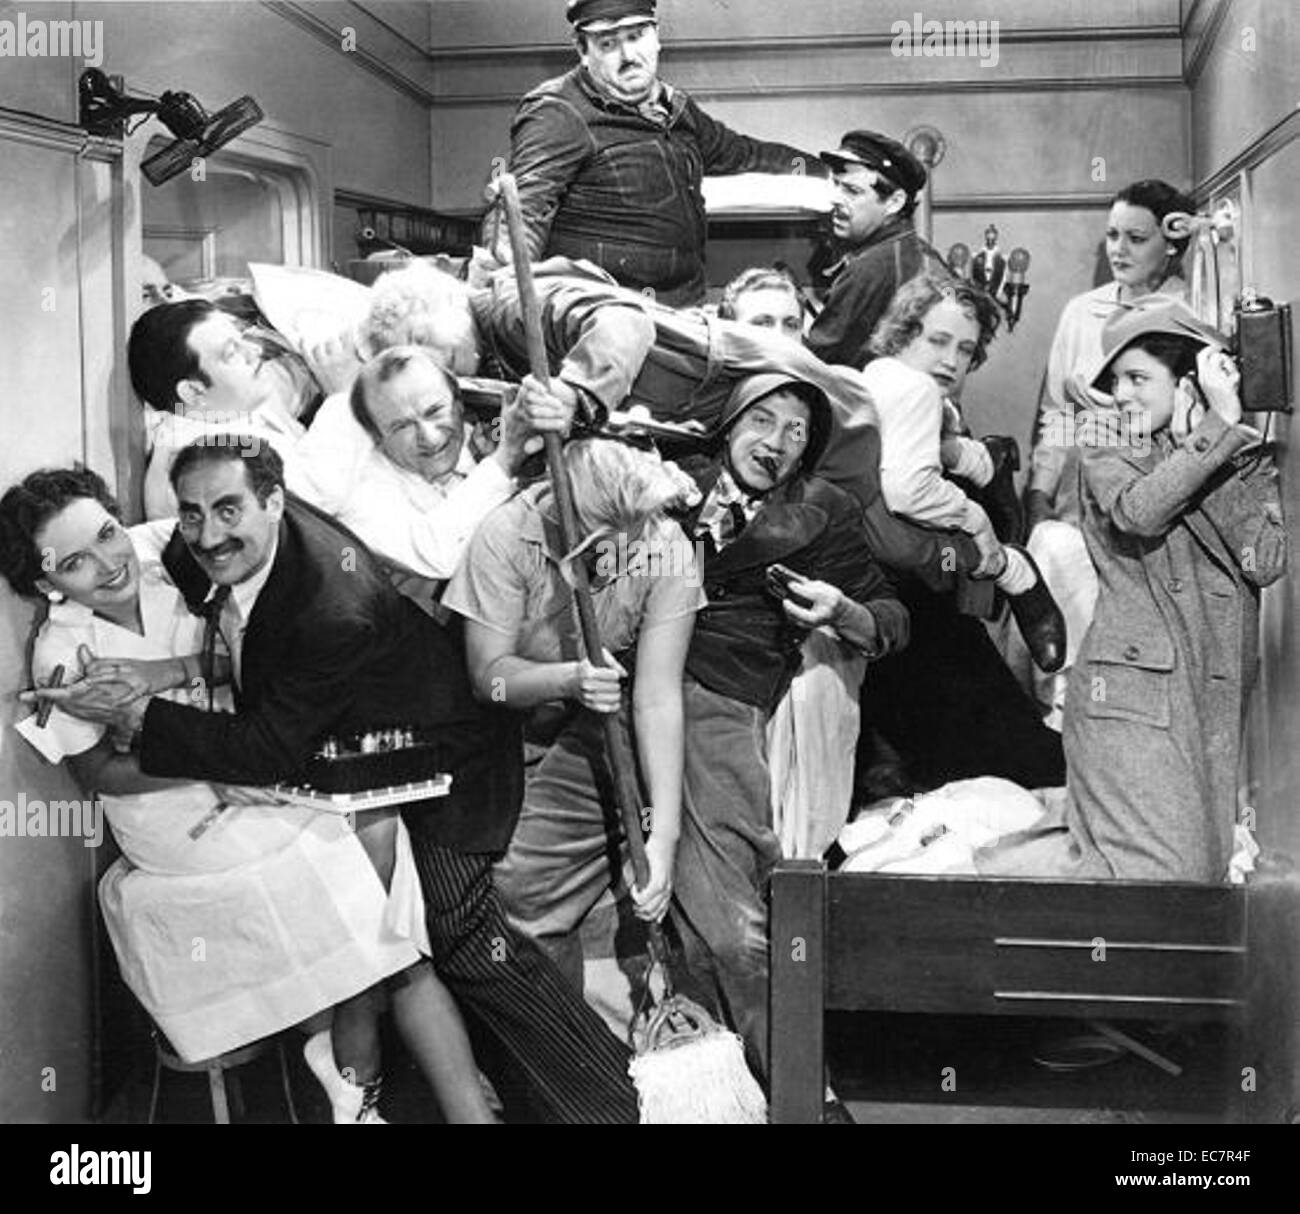 Die Kabine Szene aus Comedy Film 1935 eine Nacht in der Oper. Starring Groucho, Chico und Harpo Marx es wurde von Sam Wood geleitet und war ein Kassenschlager. Stockfoto